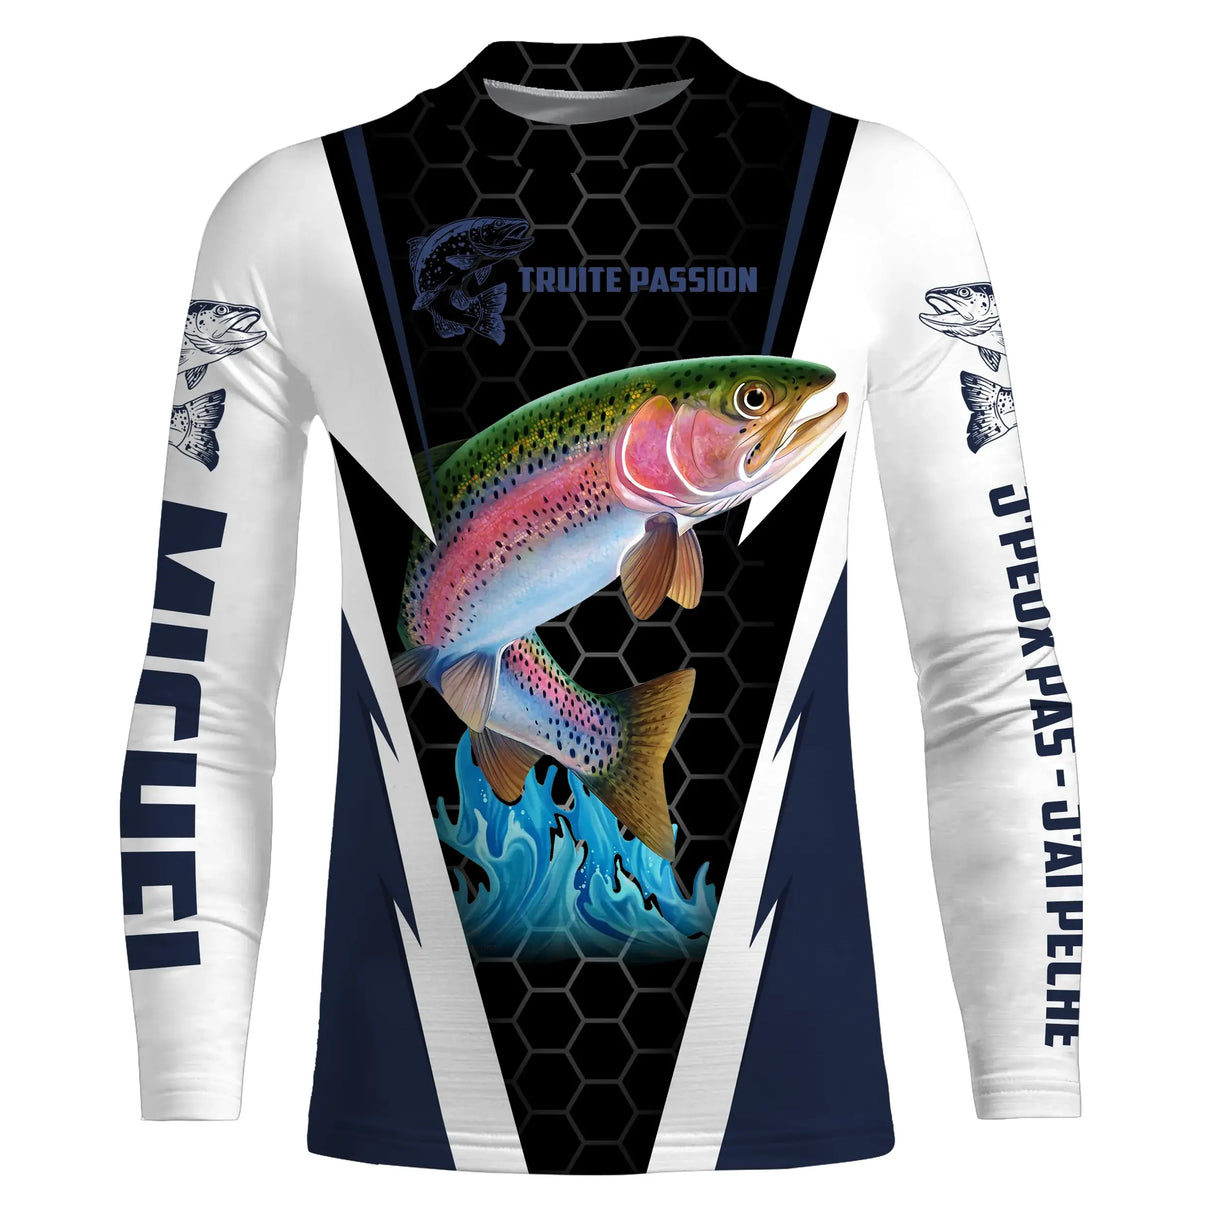 T-shirt da pesca alla trota, regalo personalizzato per pescatori, passione per la trota - CT08072221